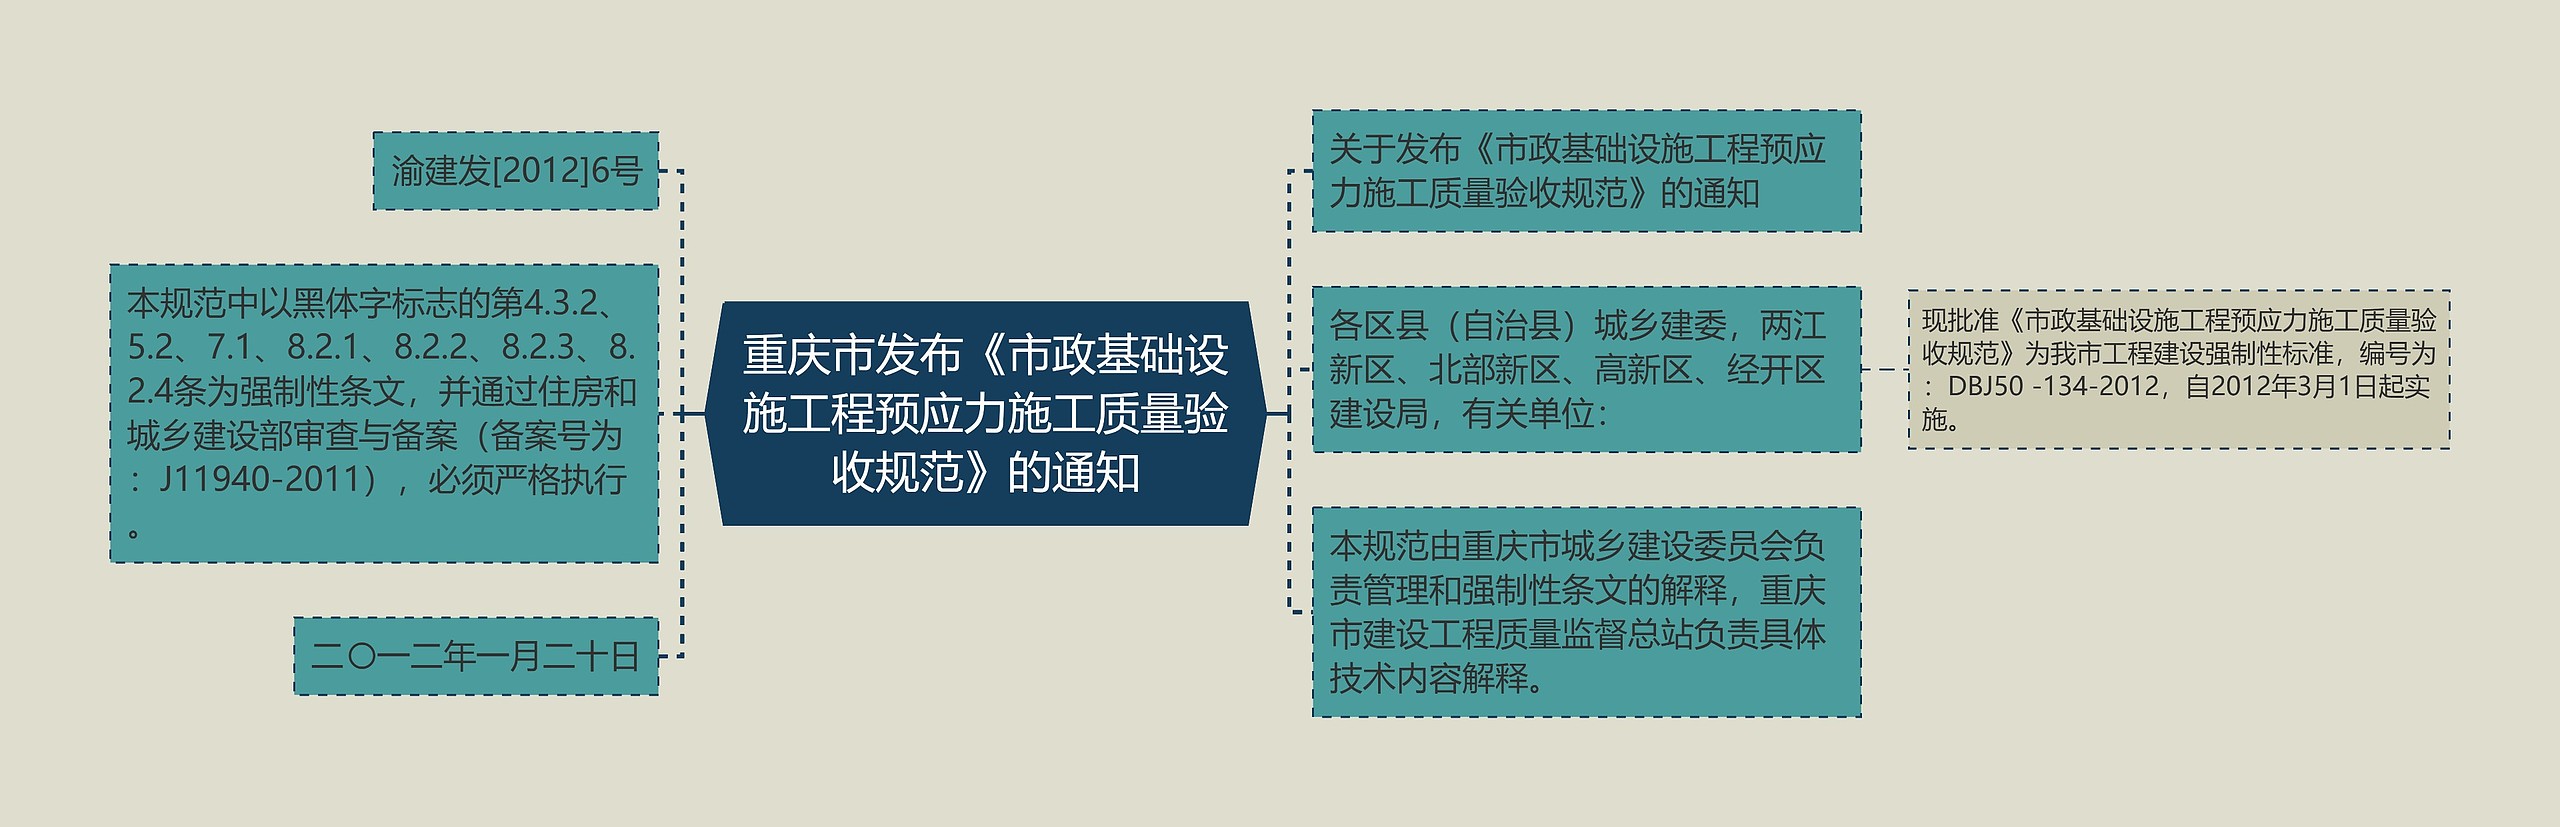 重庆市发布《市政基础设施工程预应力施工质量验收规范》的通知